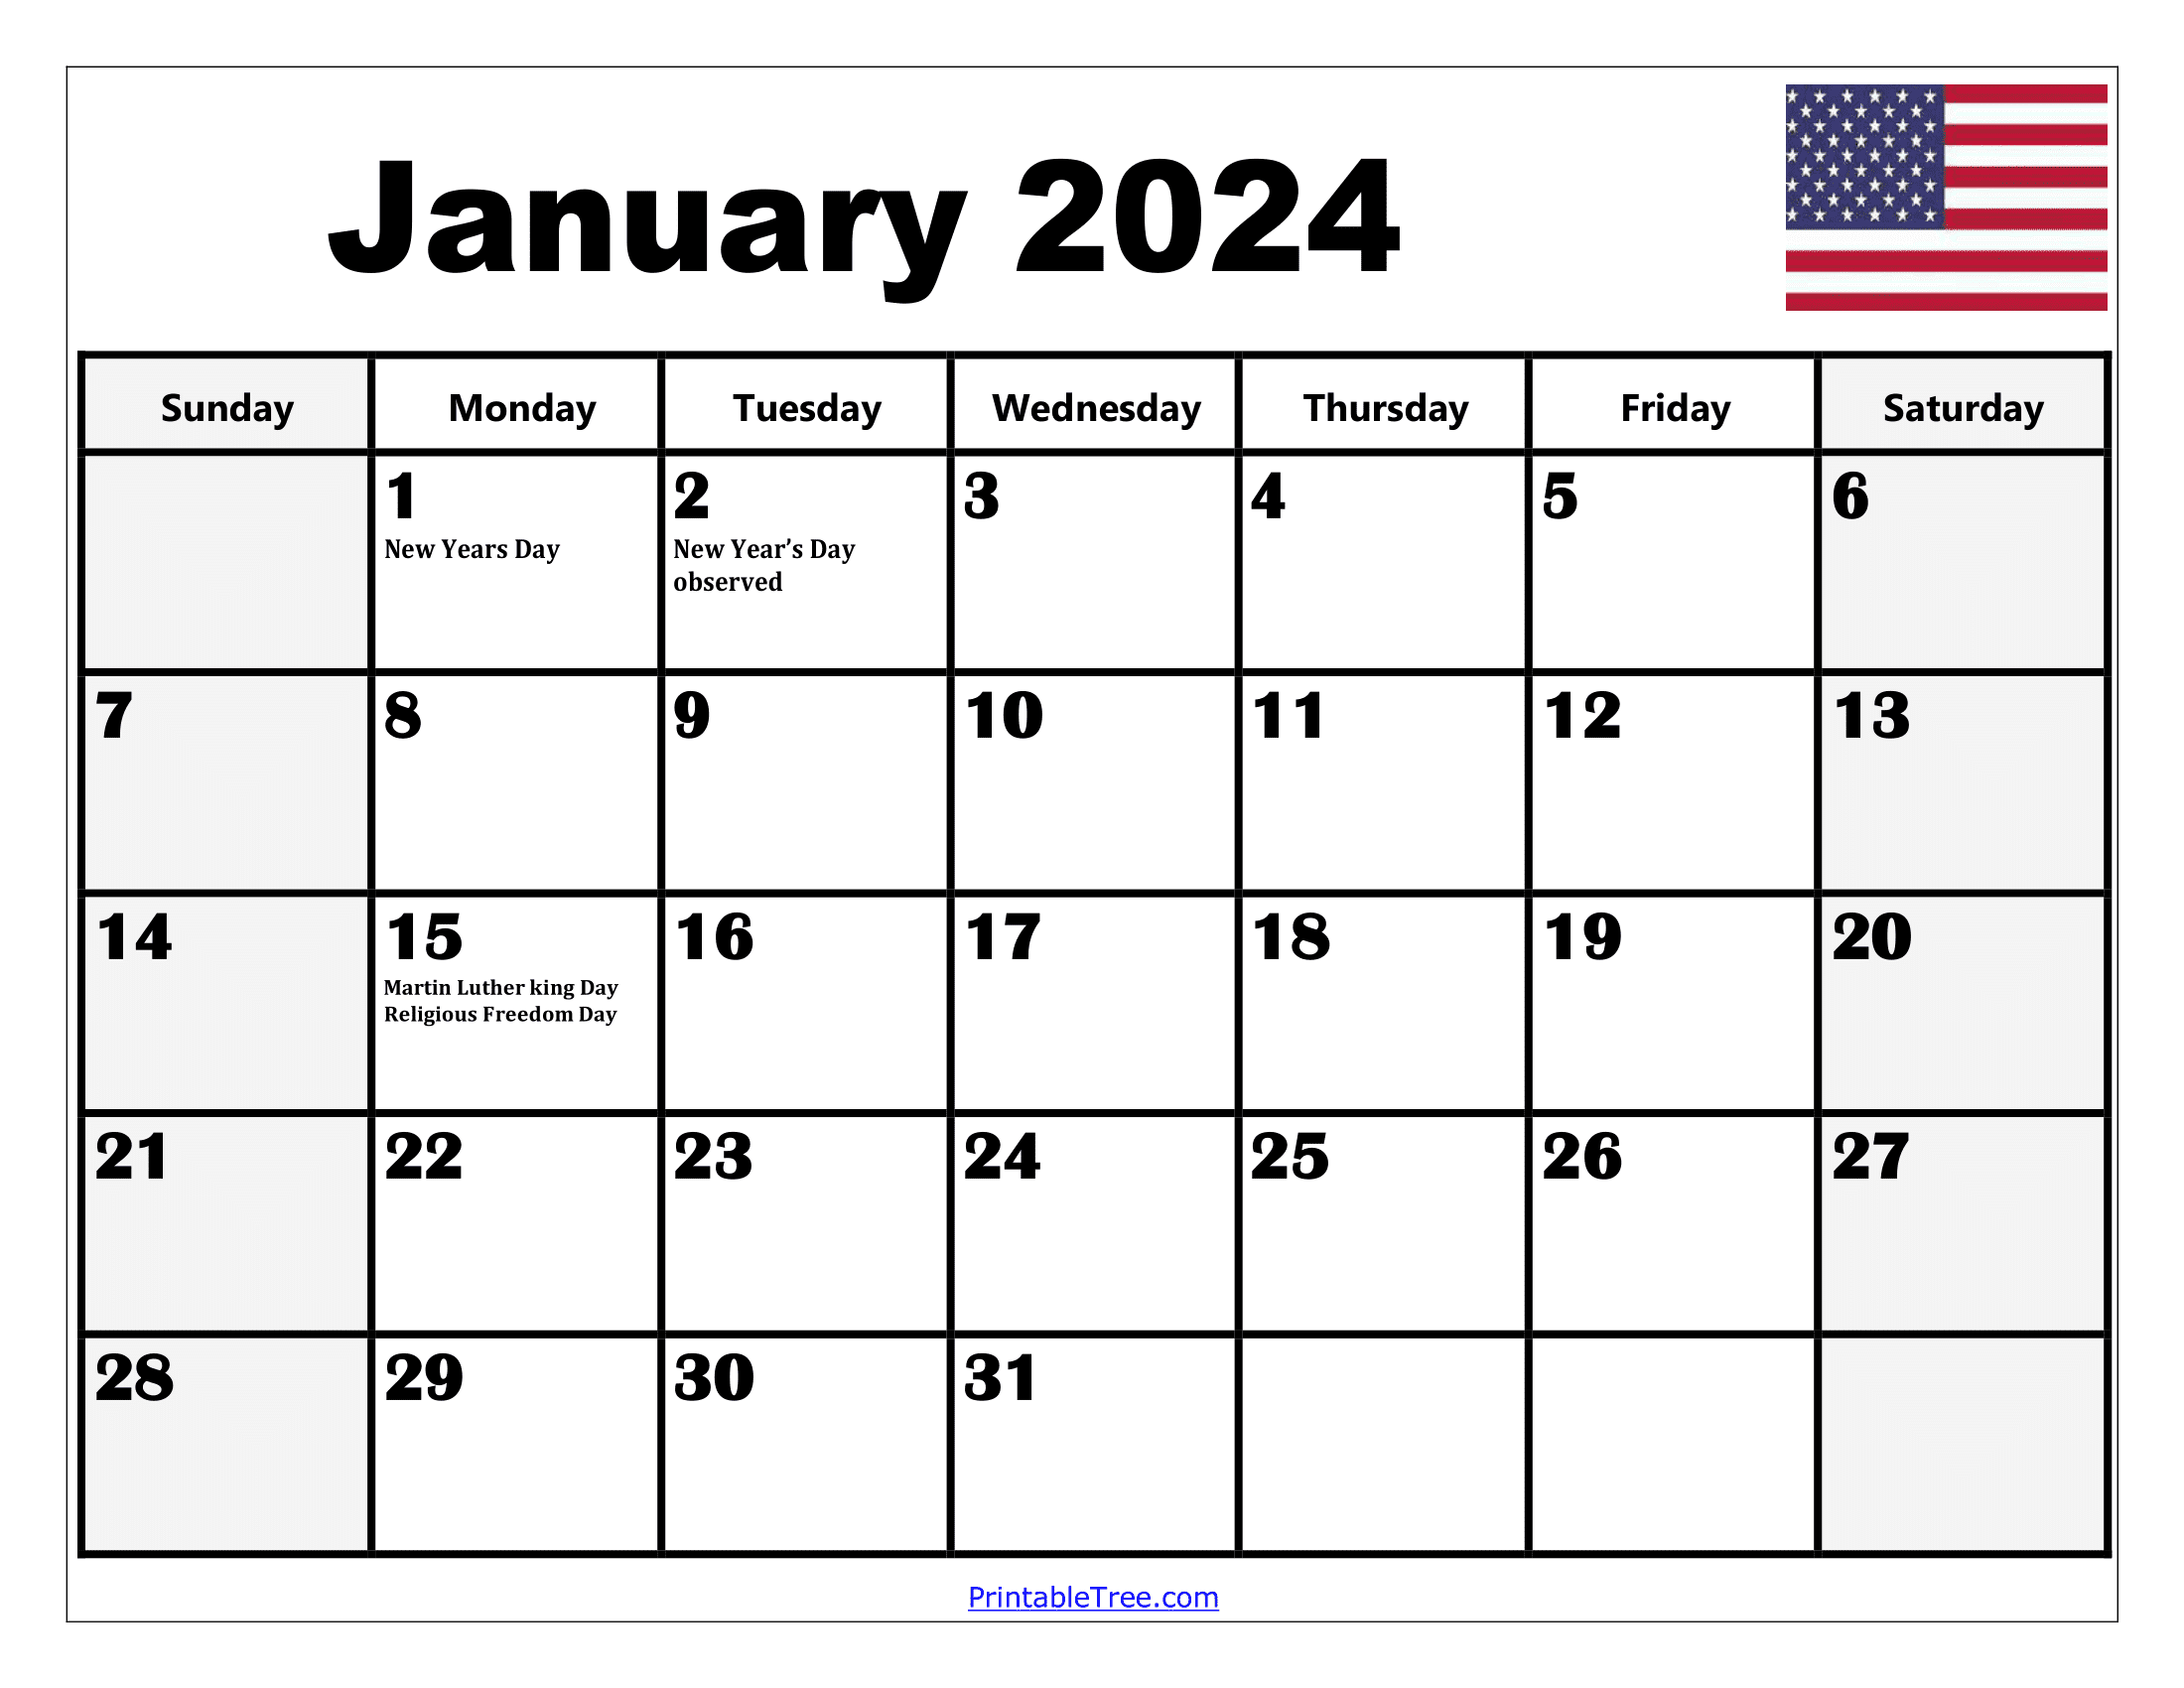 2024 Holiday Calendar Days Free Download Nov 2024 Calendar - Free Printable 2024 Calendar With Holidays And Pictures